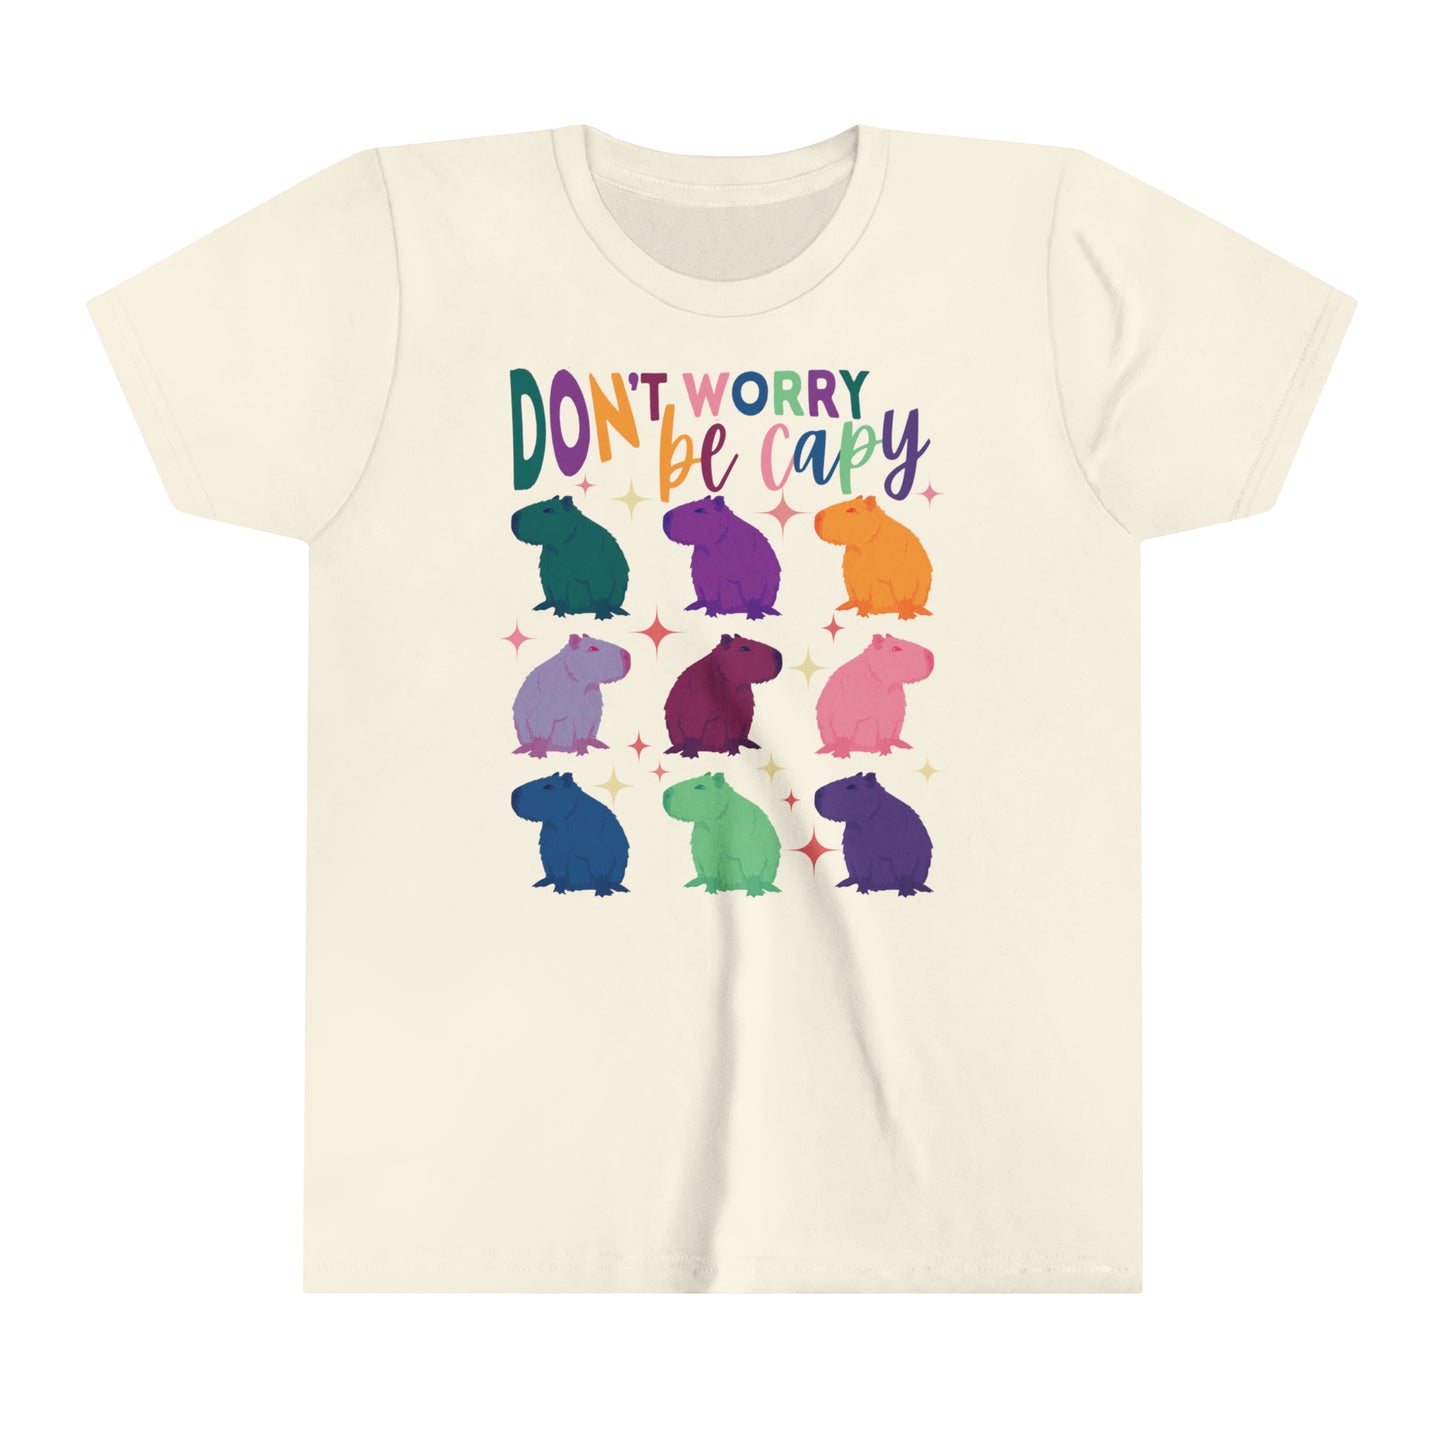 Capybara T-Shirt Youth | Retro Groovy Capybara Shirt